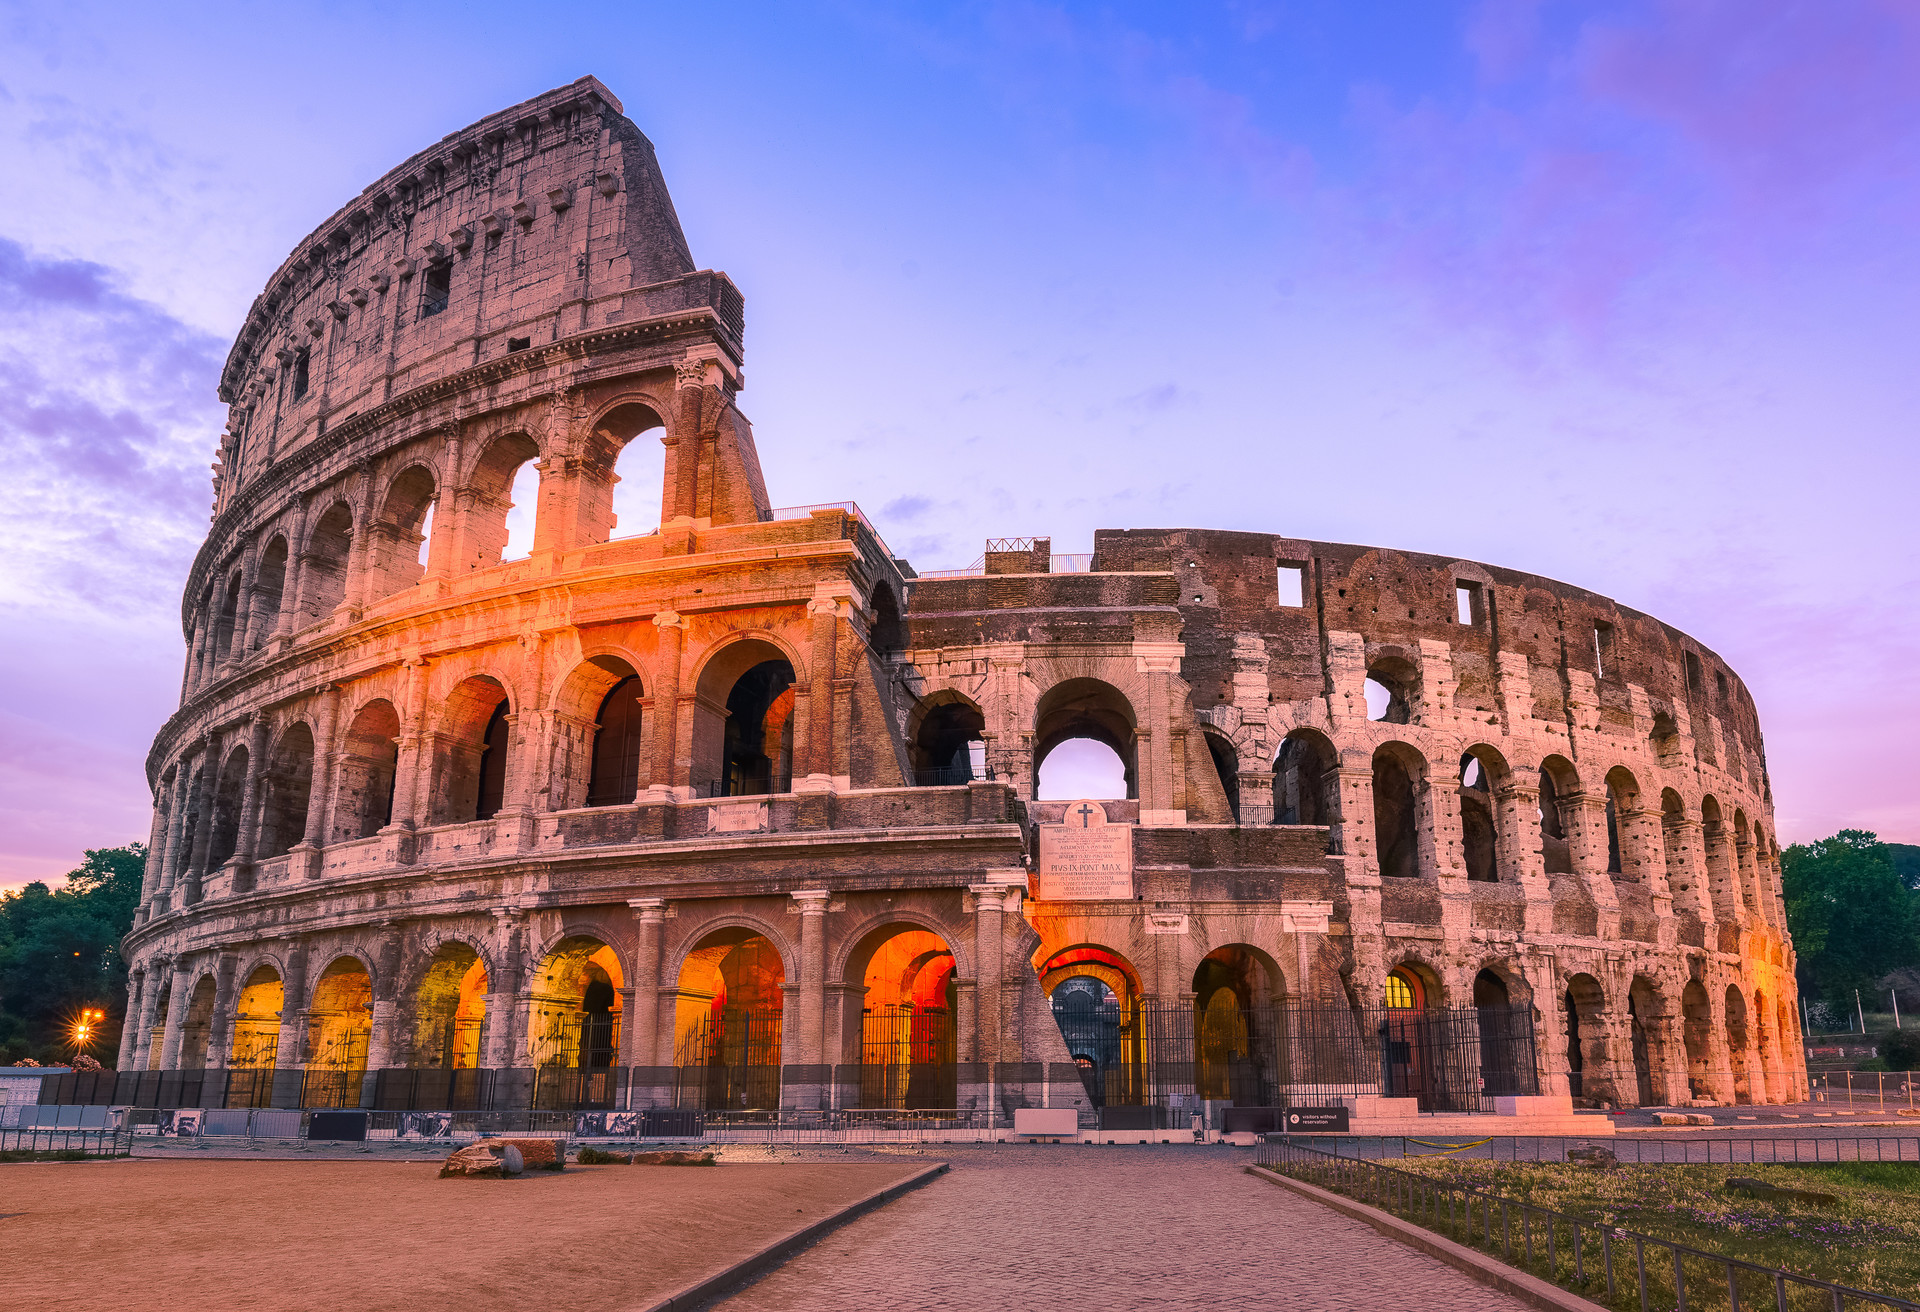 Het Colosseum in Rome was beslist gebouwd om indruk te maken